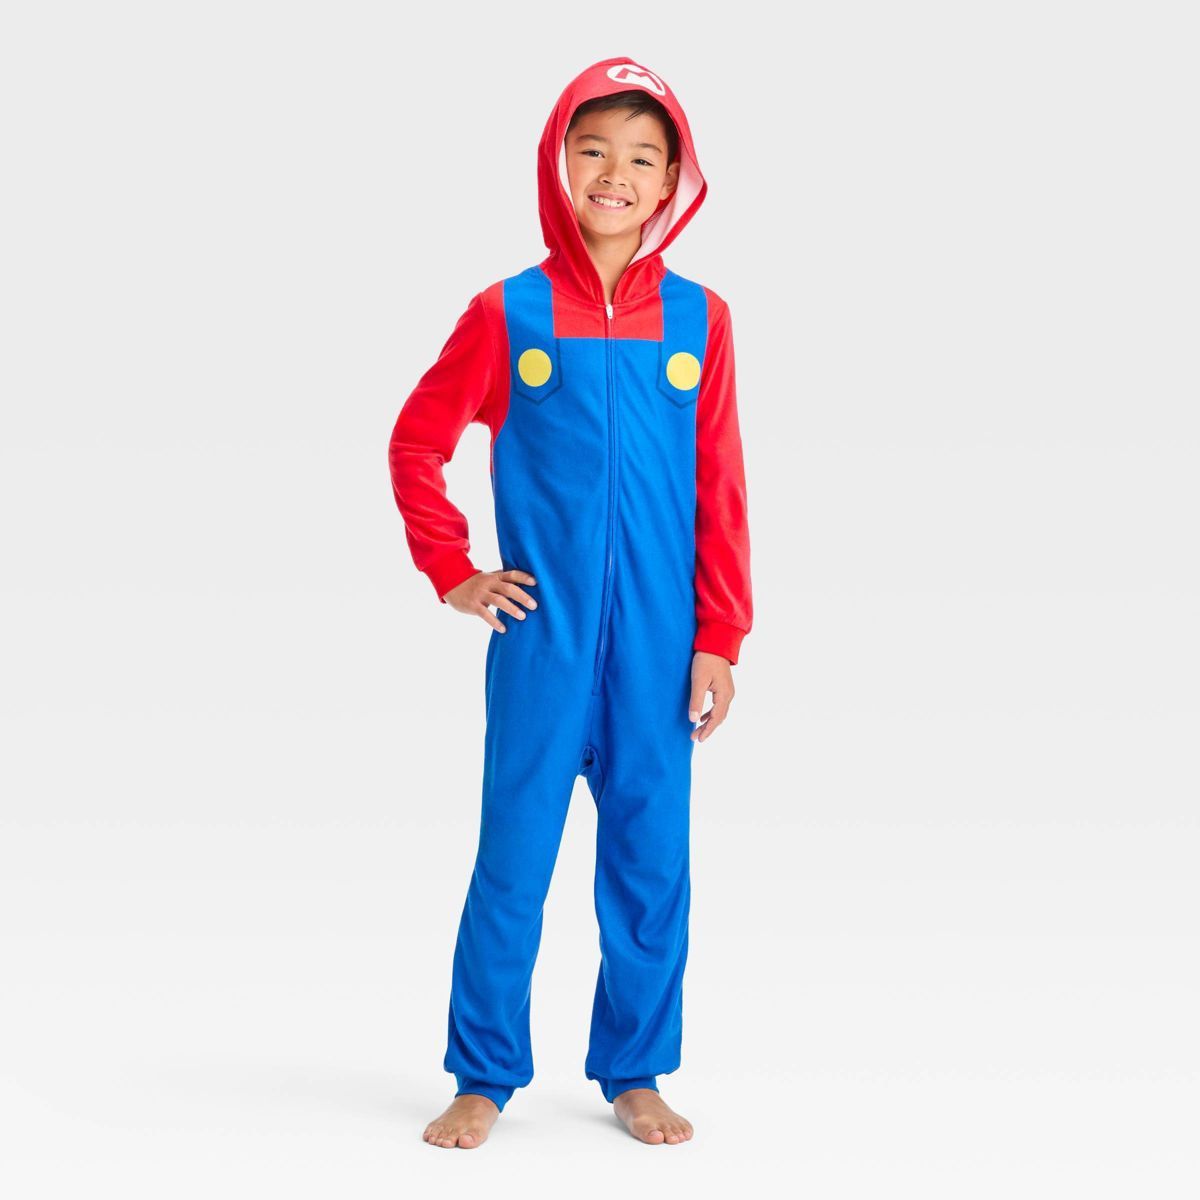 Boys' Super Mario Uniform Union Suit - Red/Blue | Target